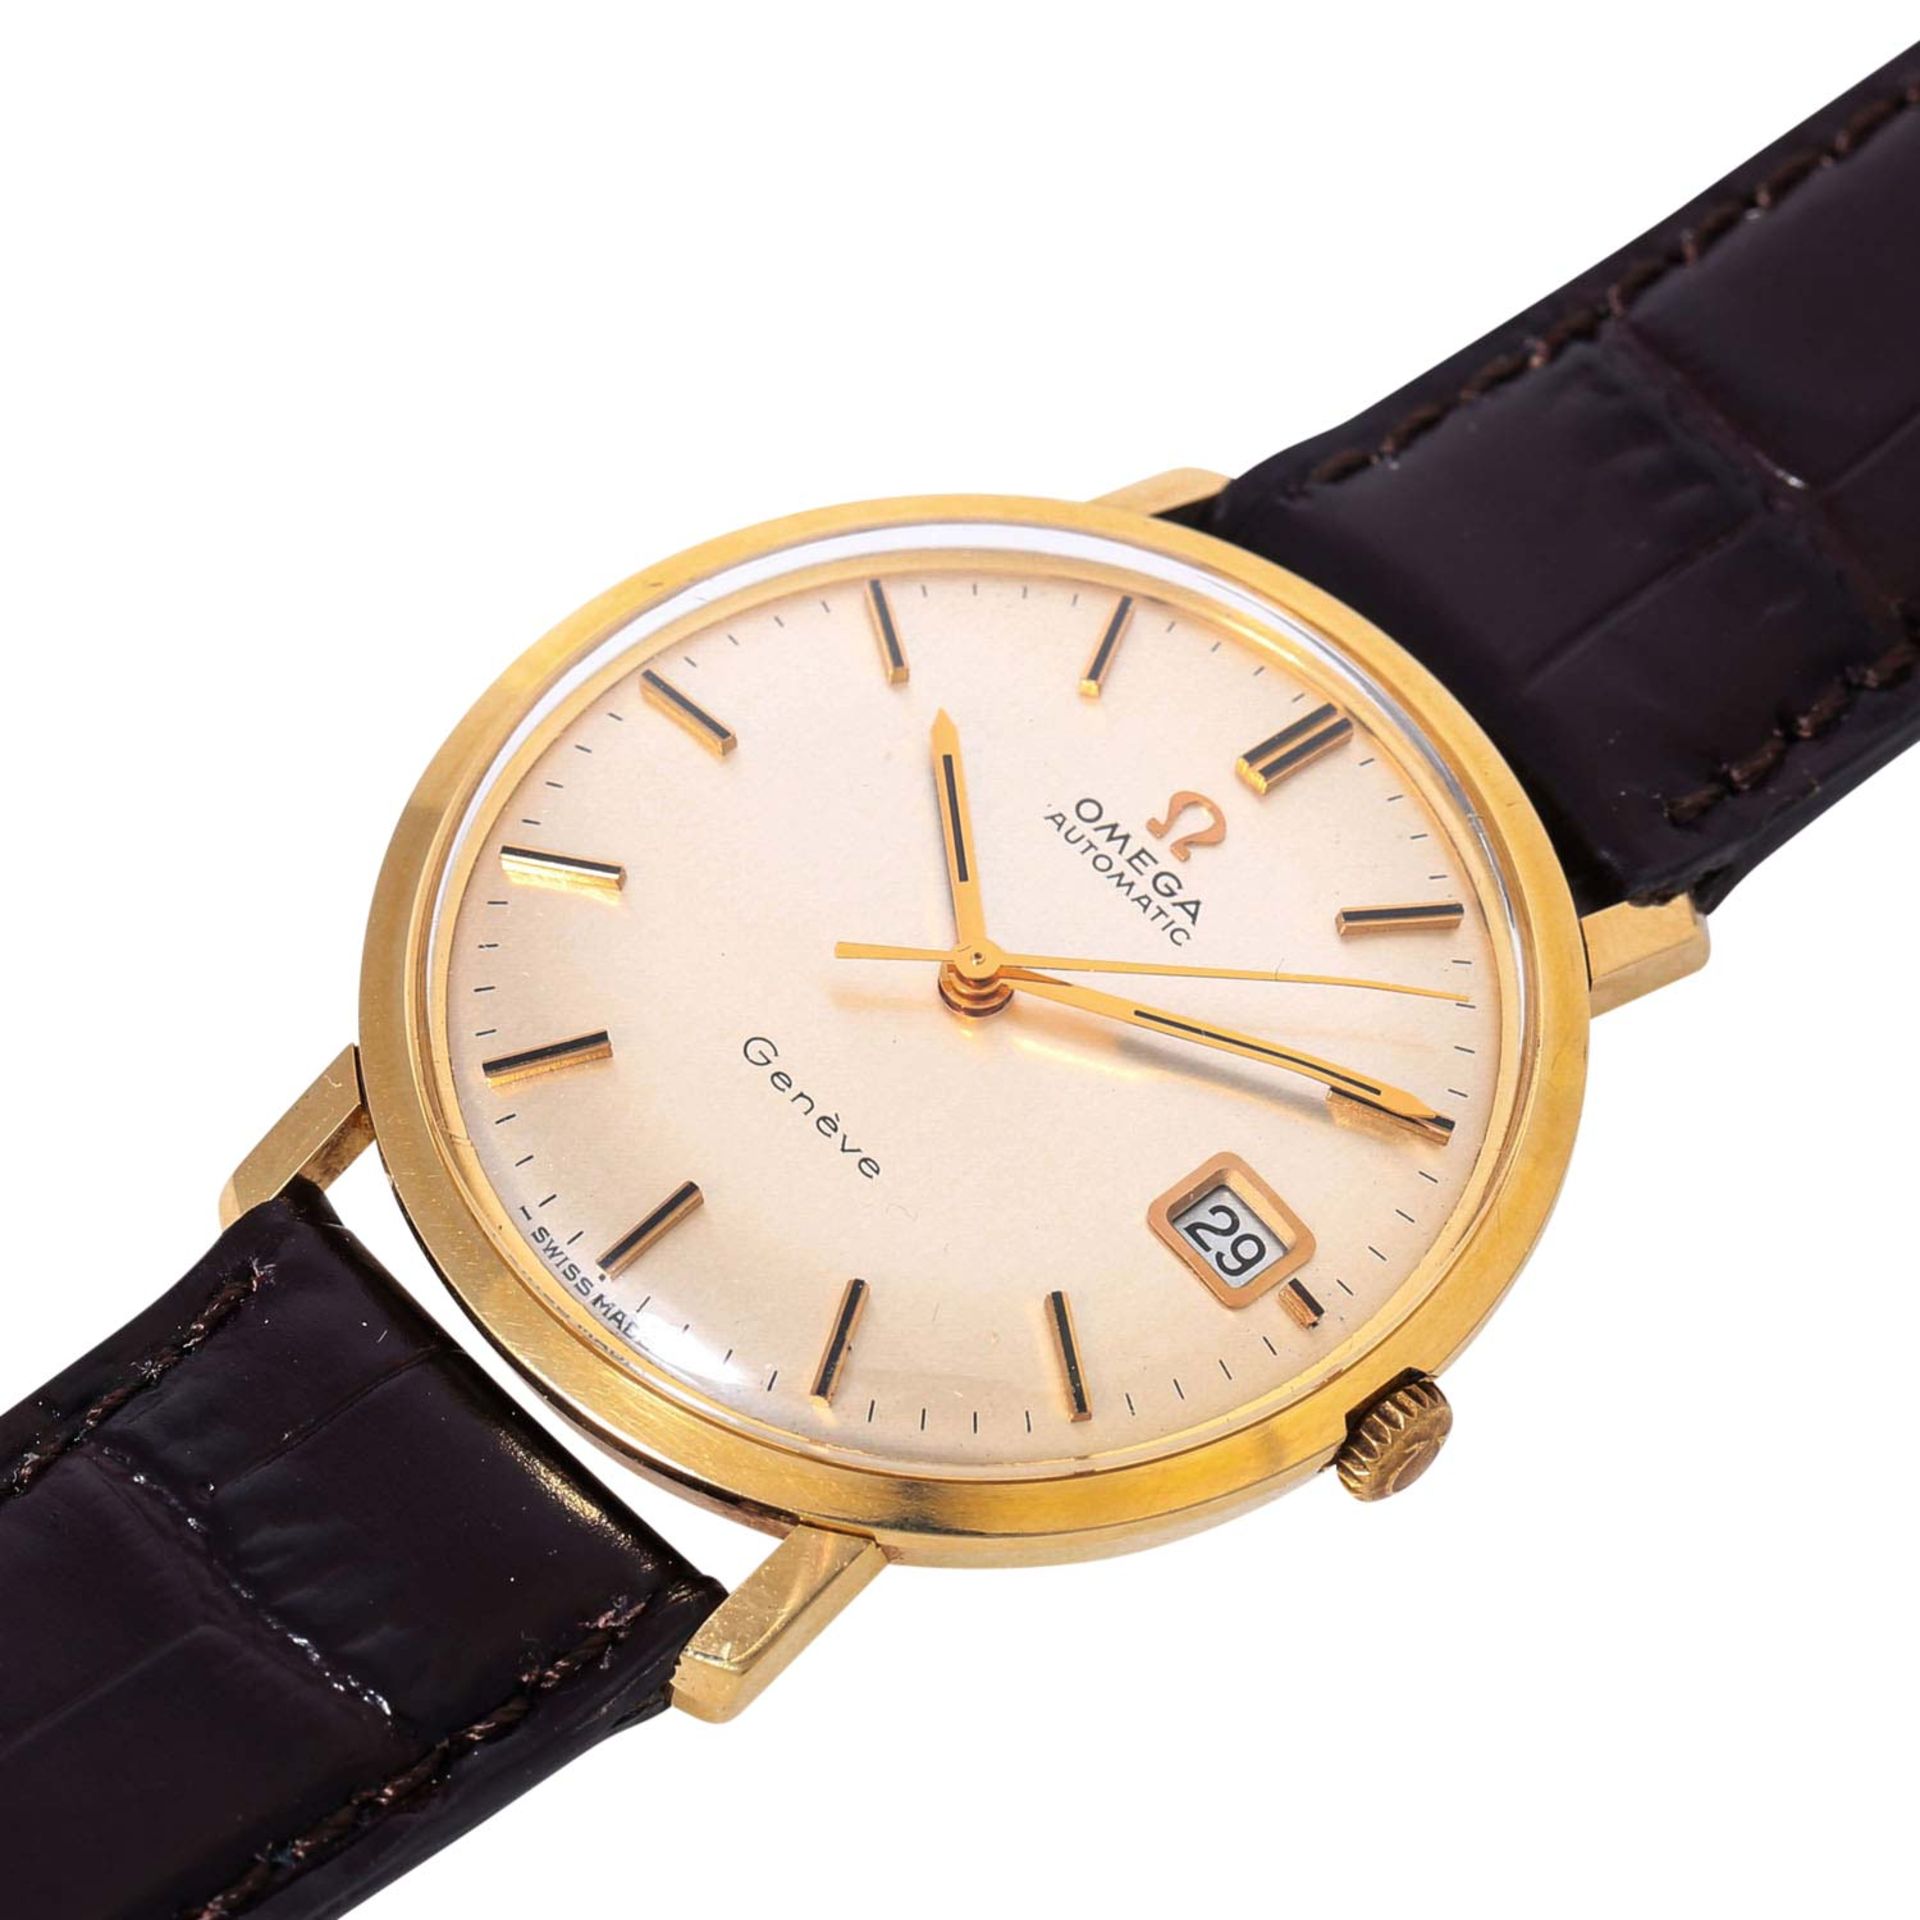 OMEGA Genéve Vintage Herren Armbanduhr, Ref. 1627037. Ca. 1960er Jahre. - Bild 5 aus 8